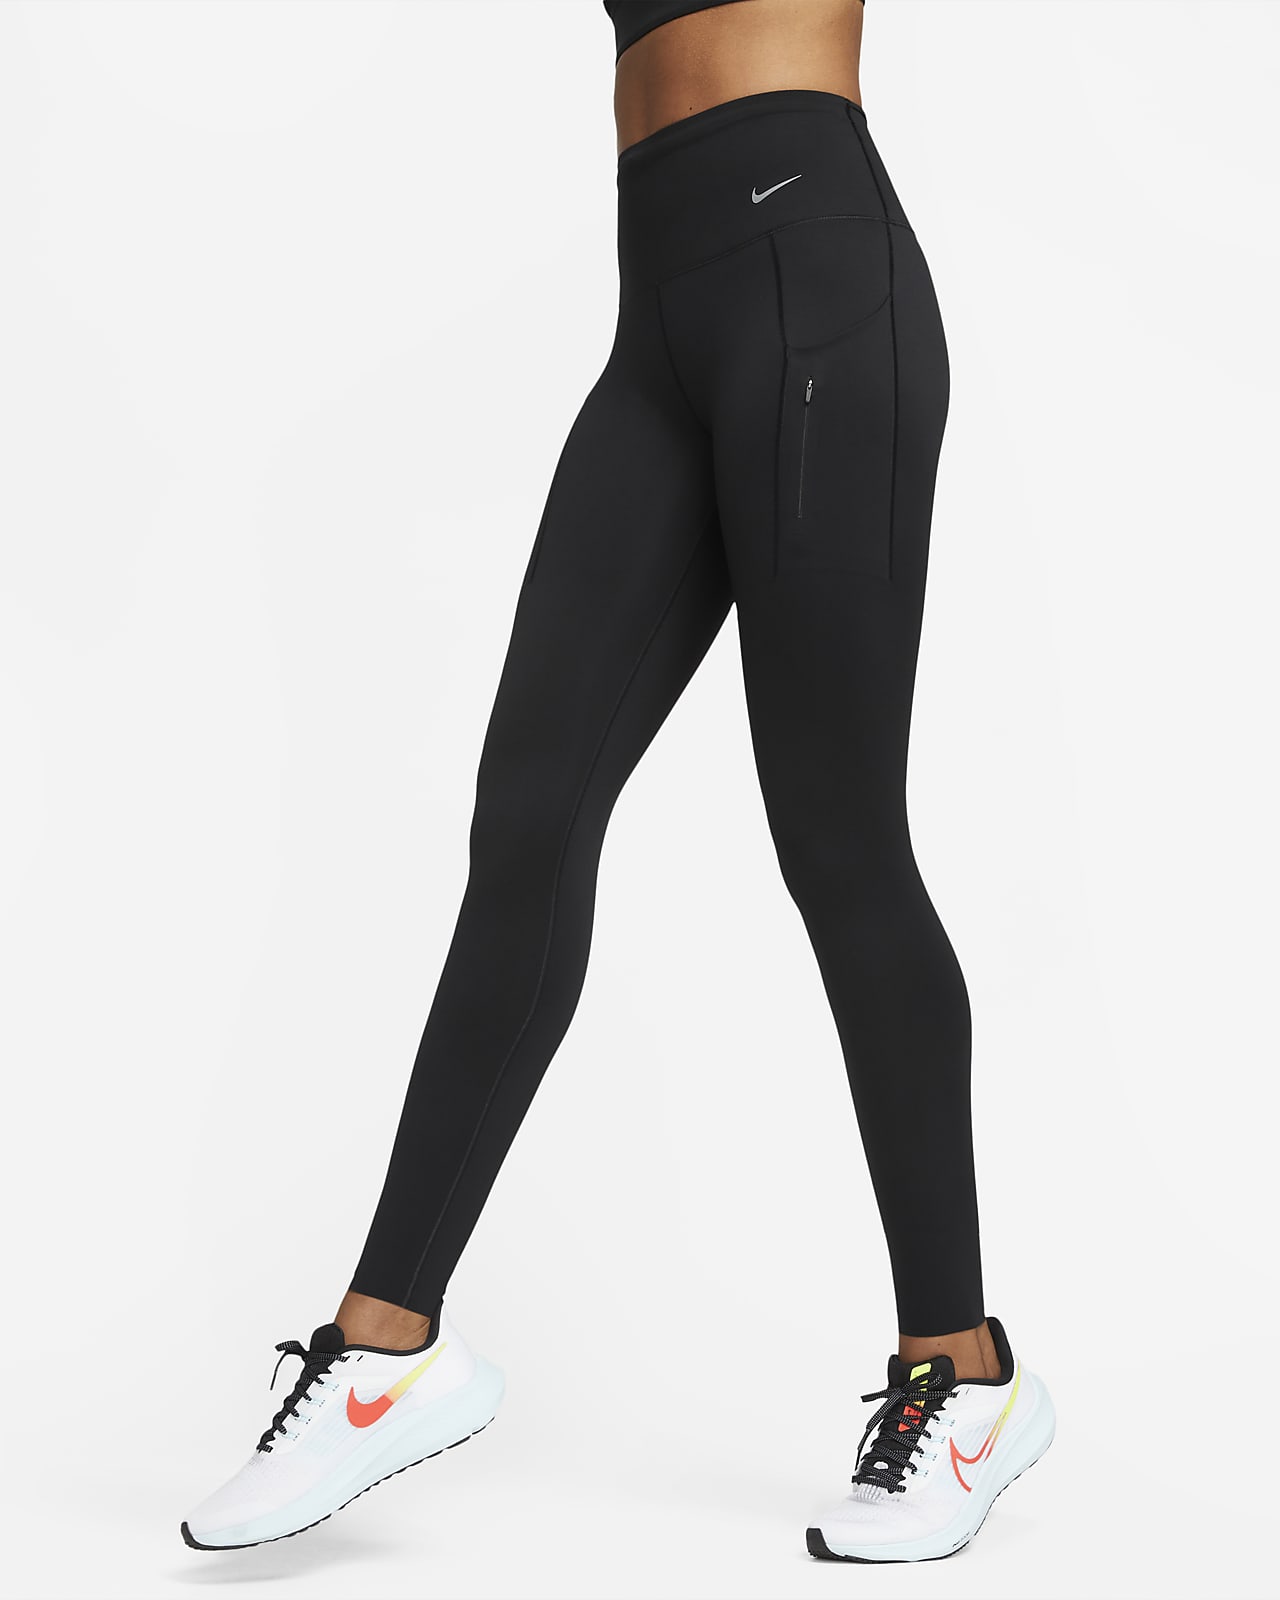 Nike Go-leggings i fuld og med lommer og fast støtte til kvinder. Nike DK